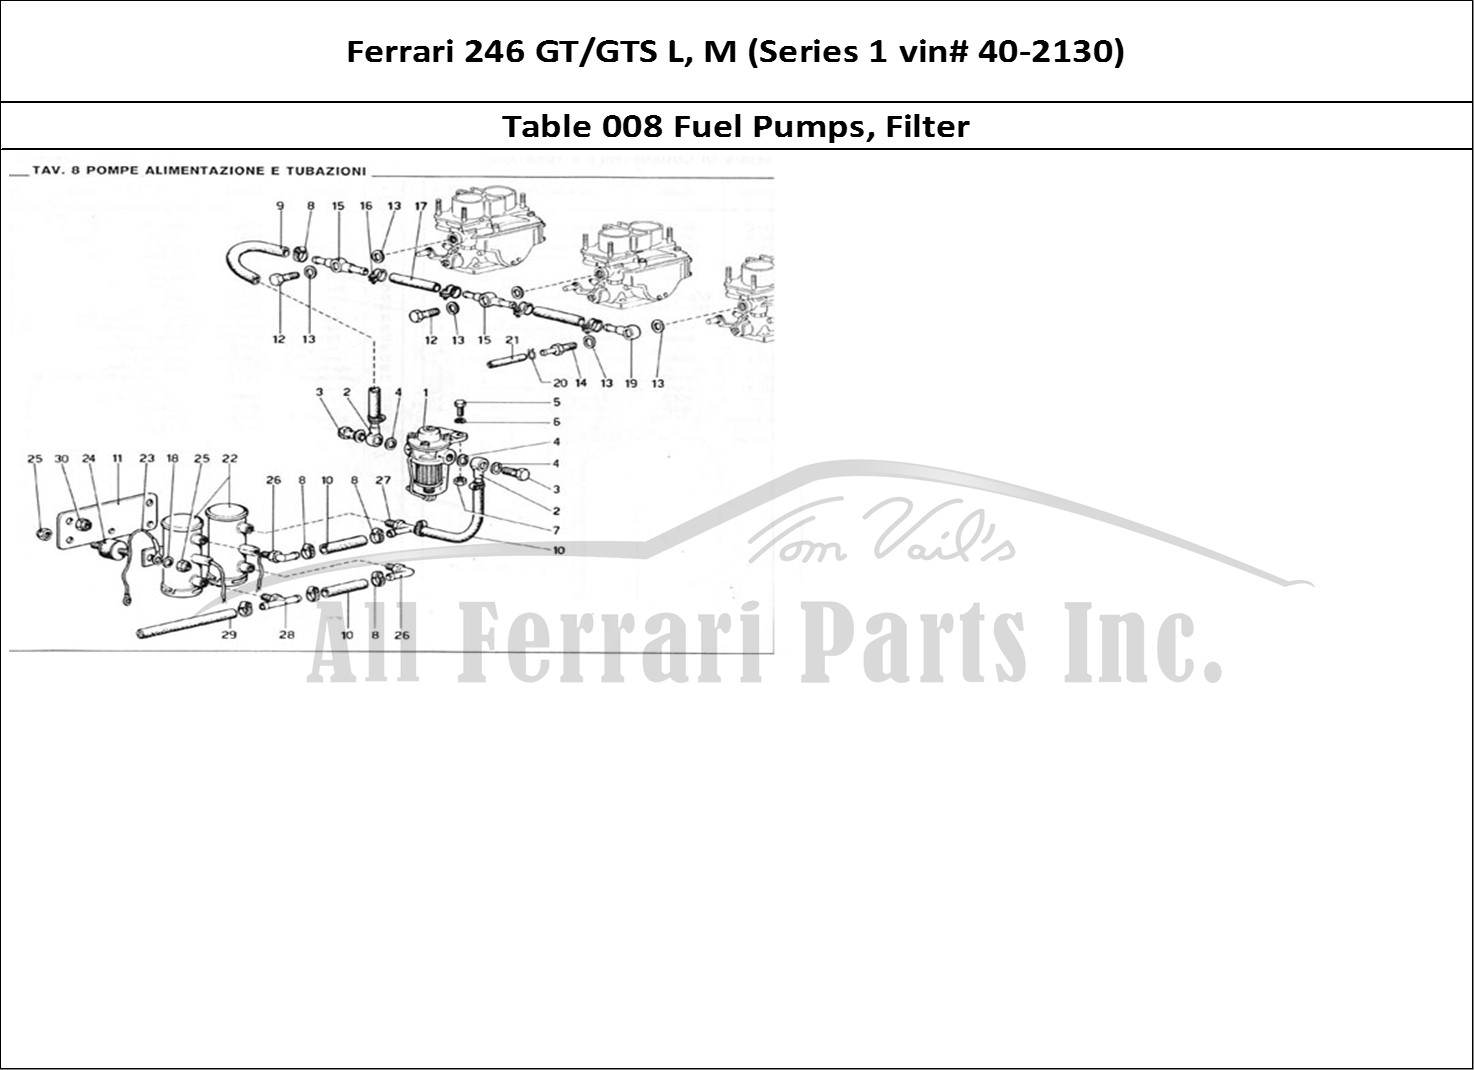 Ferrari Parts Ferrari 246 GT Series 1 Page 008 Fuel Pumps & Filters